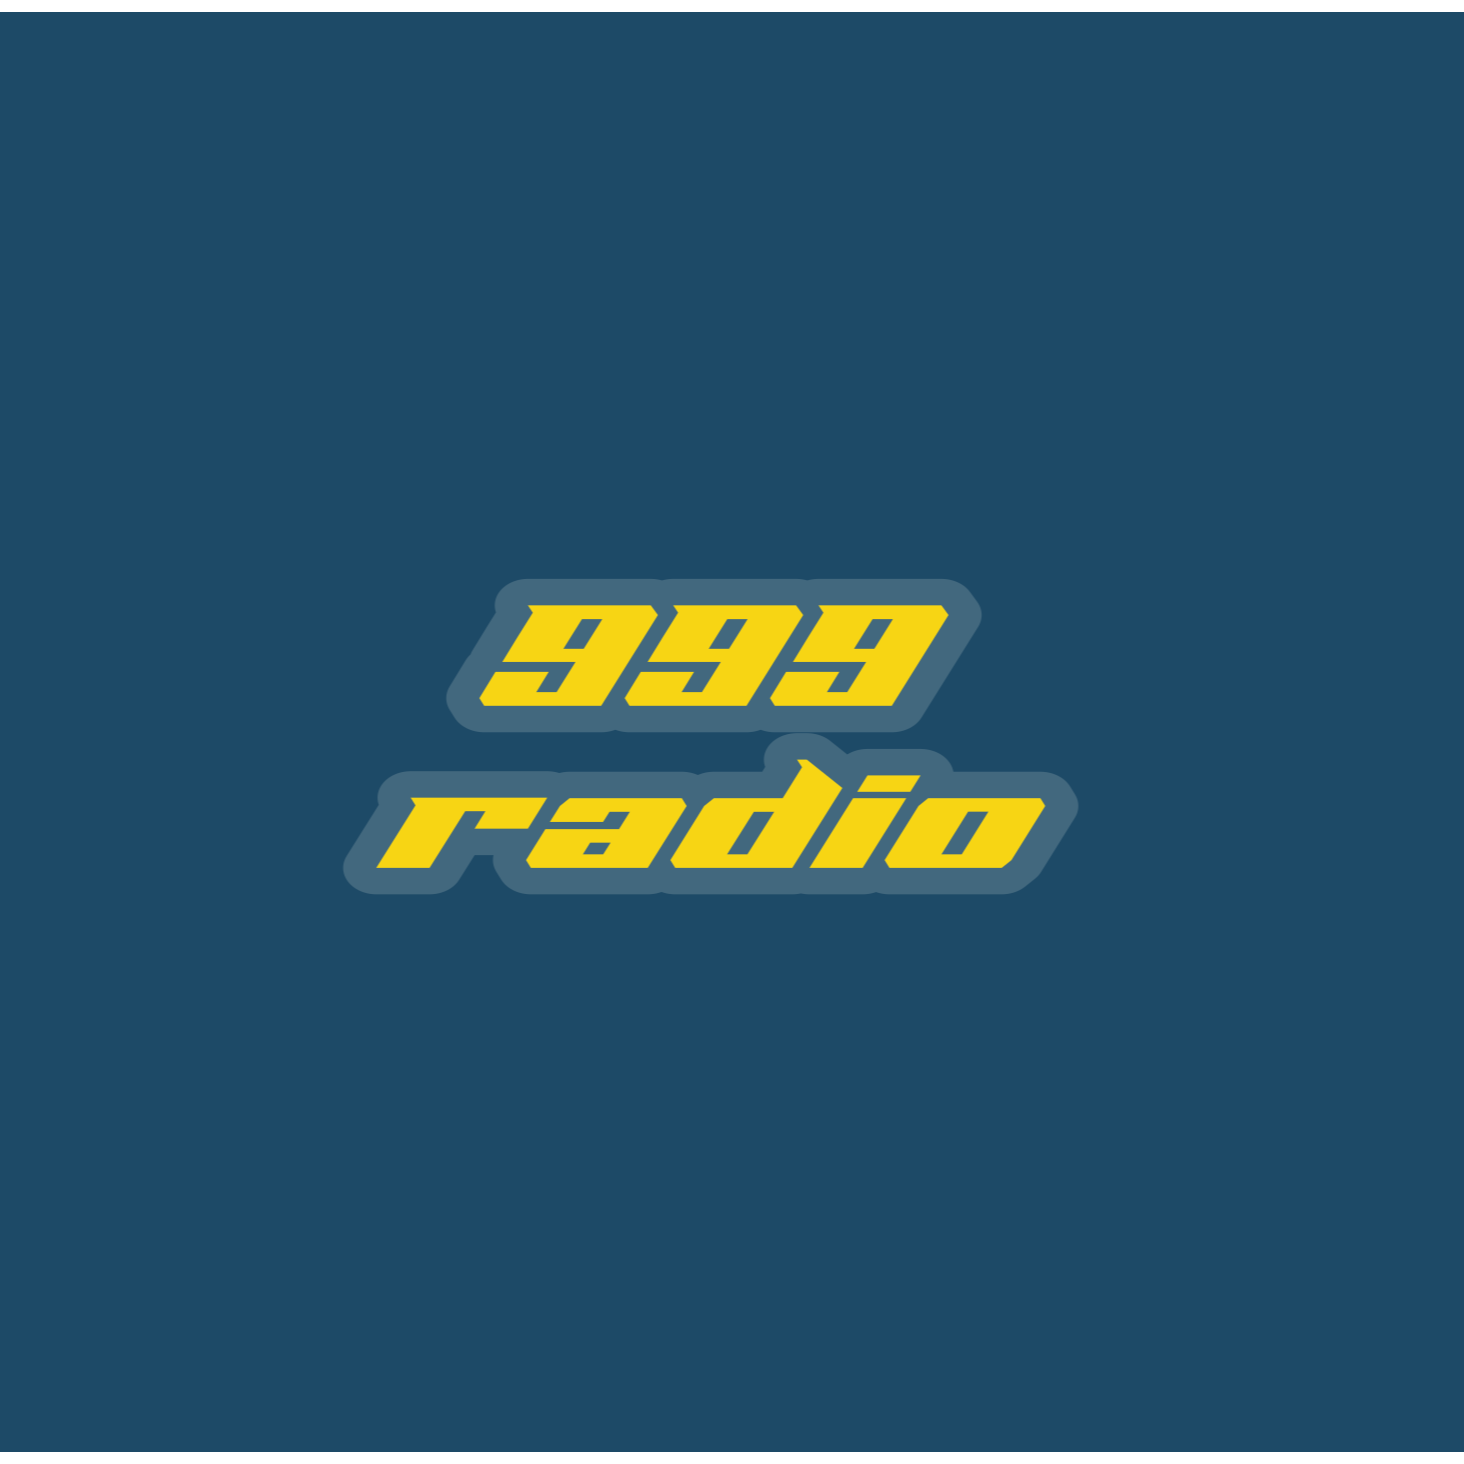 999 radio